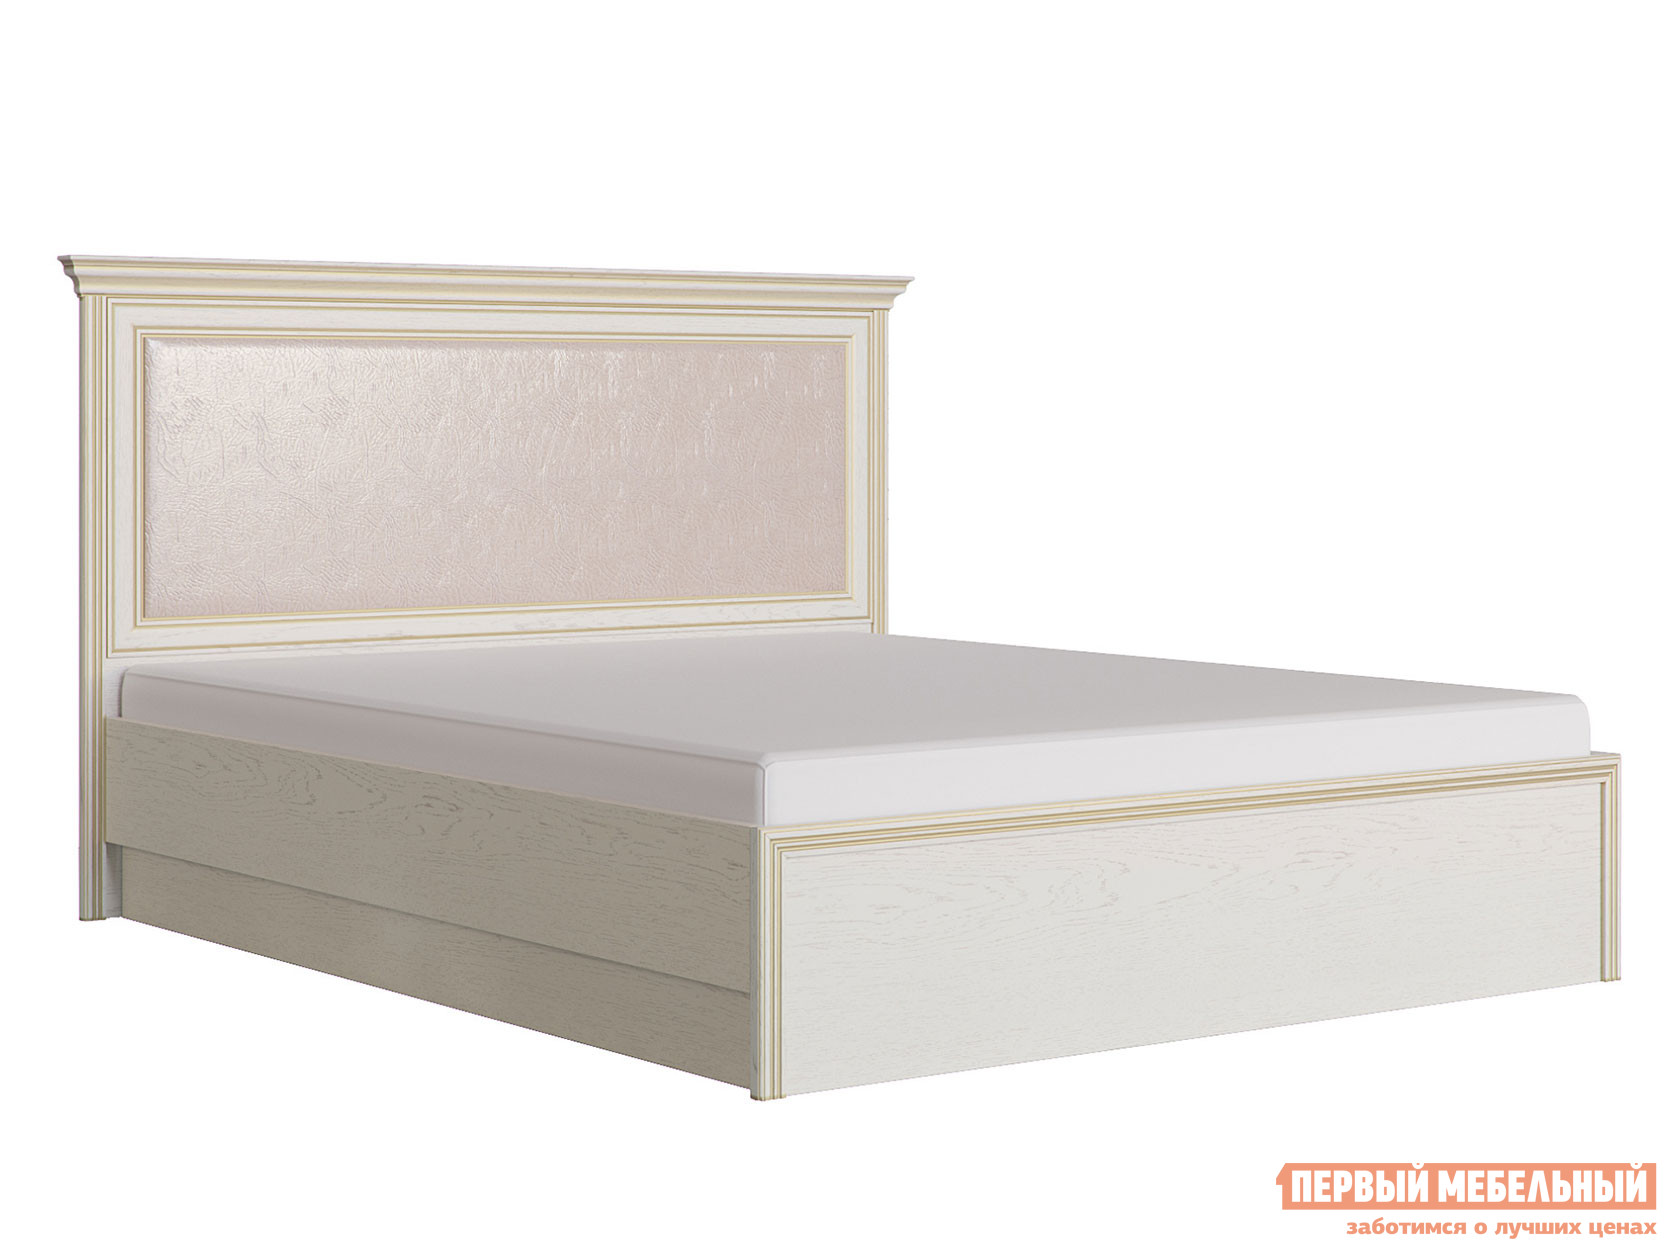 Двуспальная кровать  Кровать Венето 1800 Х 2000 мм, Дуб молочный / Кожа перламутр, С подъемным механизмом